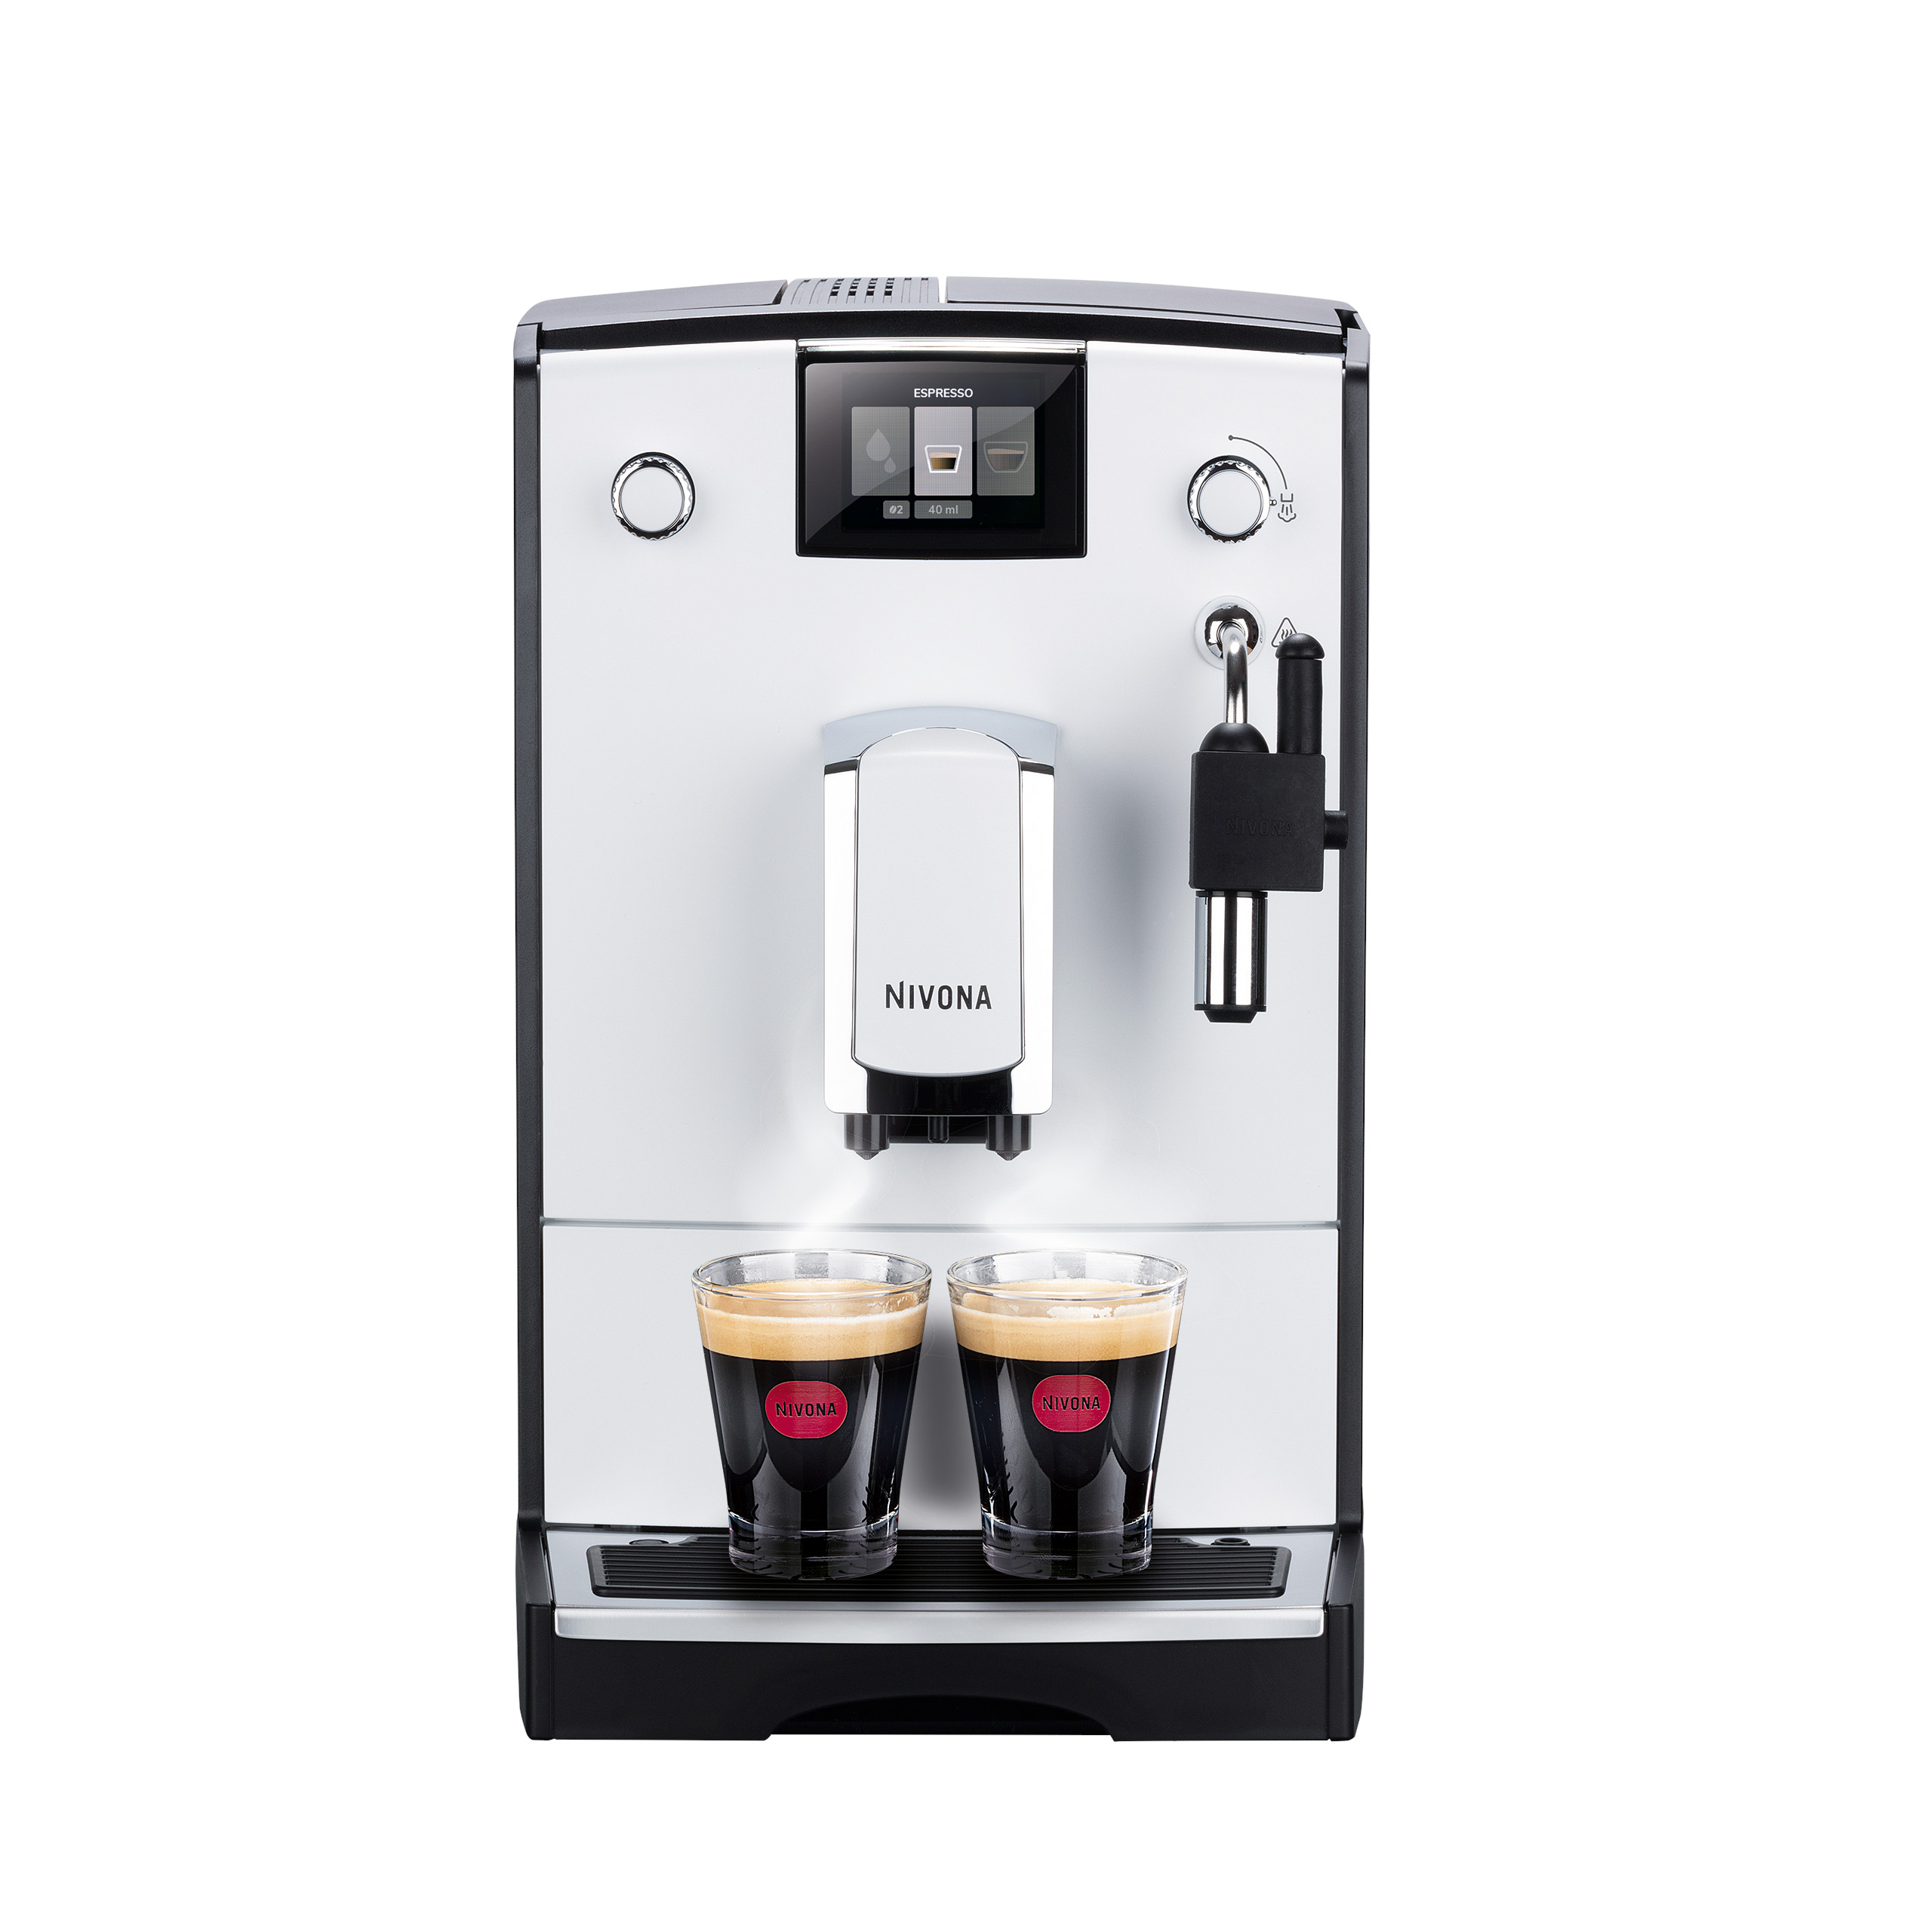 NICR 560 Cafe Romatica fully automatic espresso machine